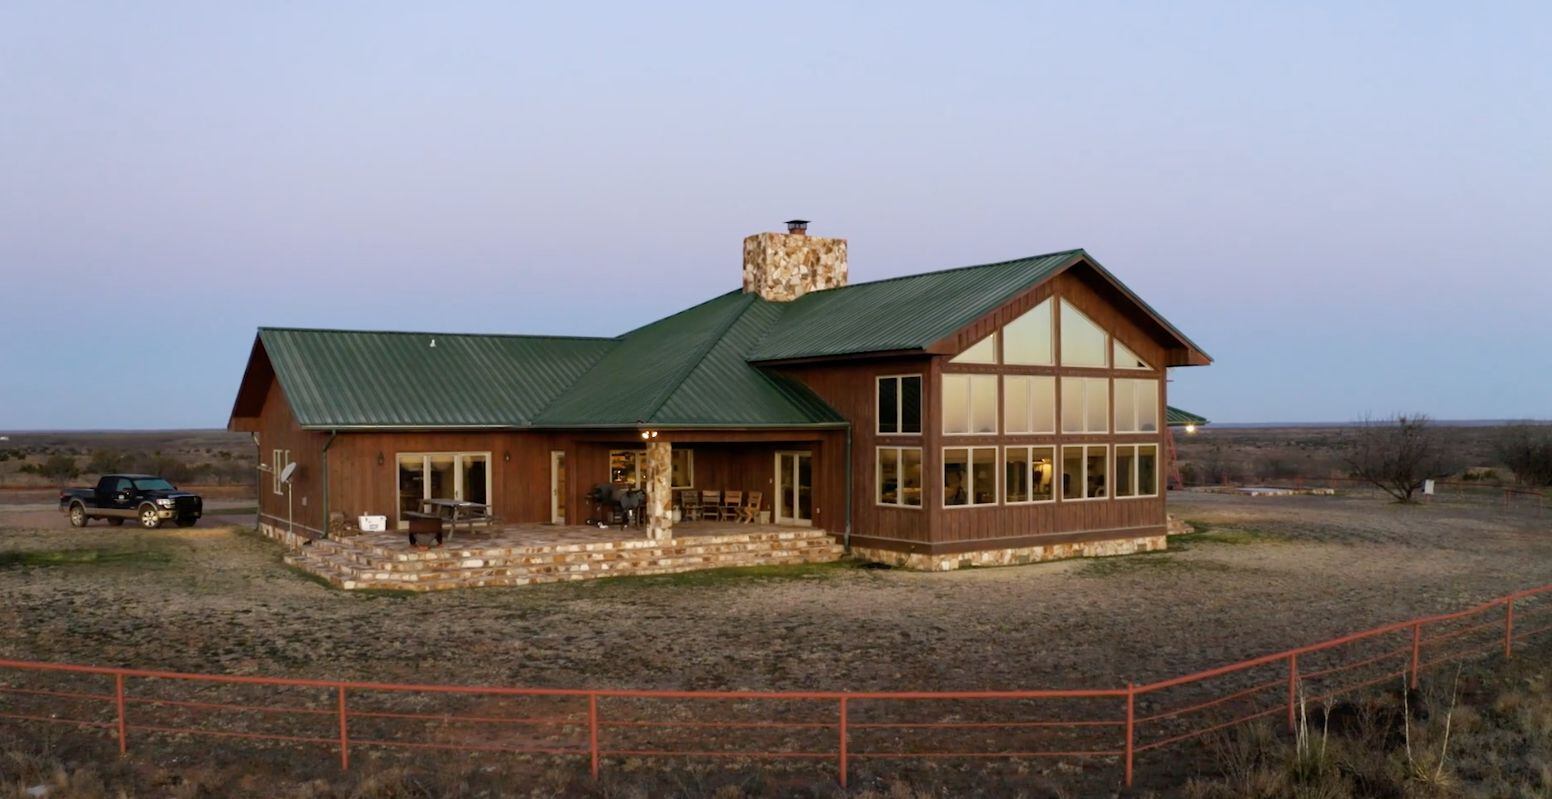 The lodge house at Caloosa Ranch.